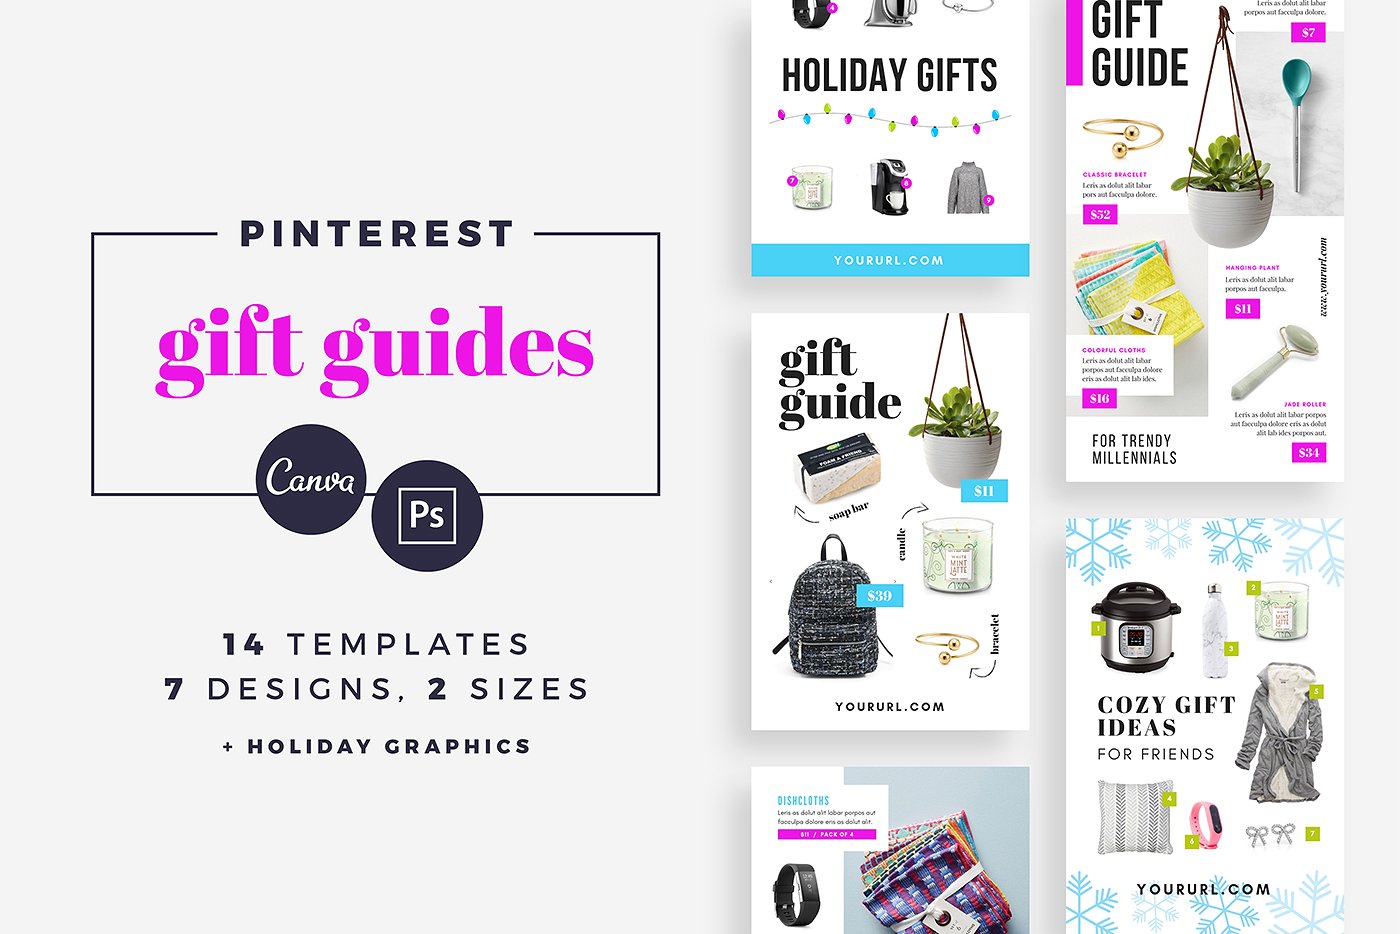 礼品指南社交媒体模板蚂蚁素材精选 Gift Guide Pinterest Templates [psd]插图